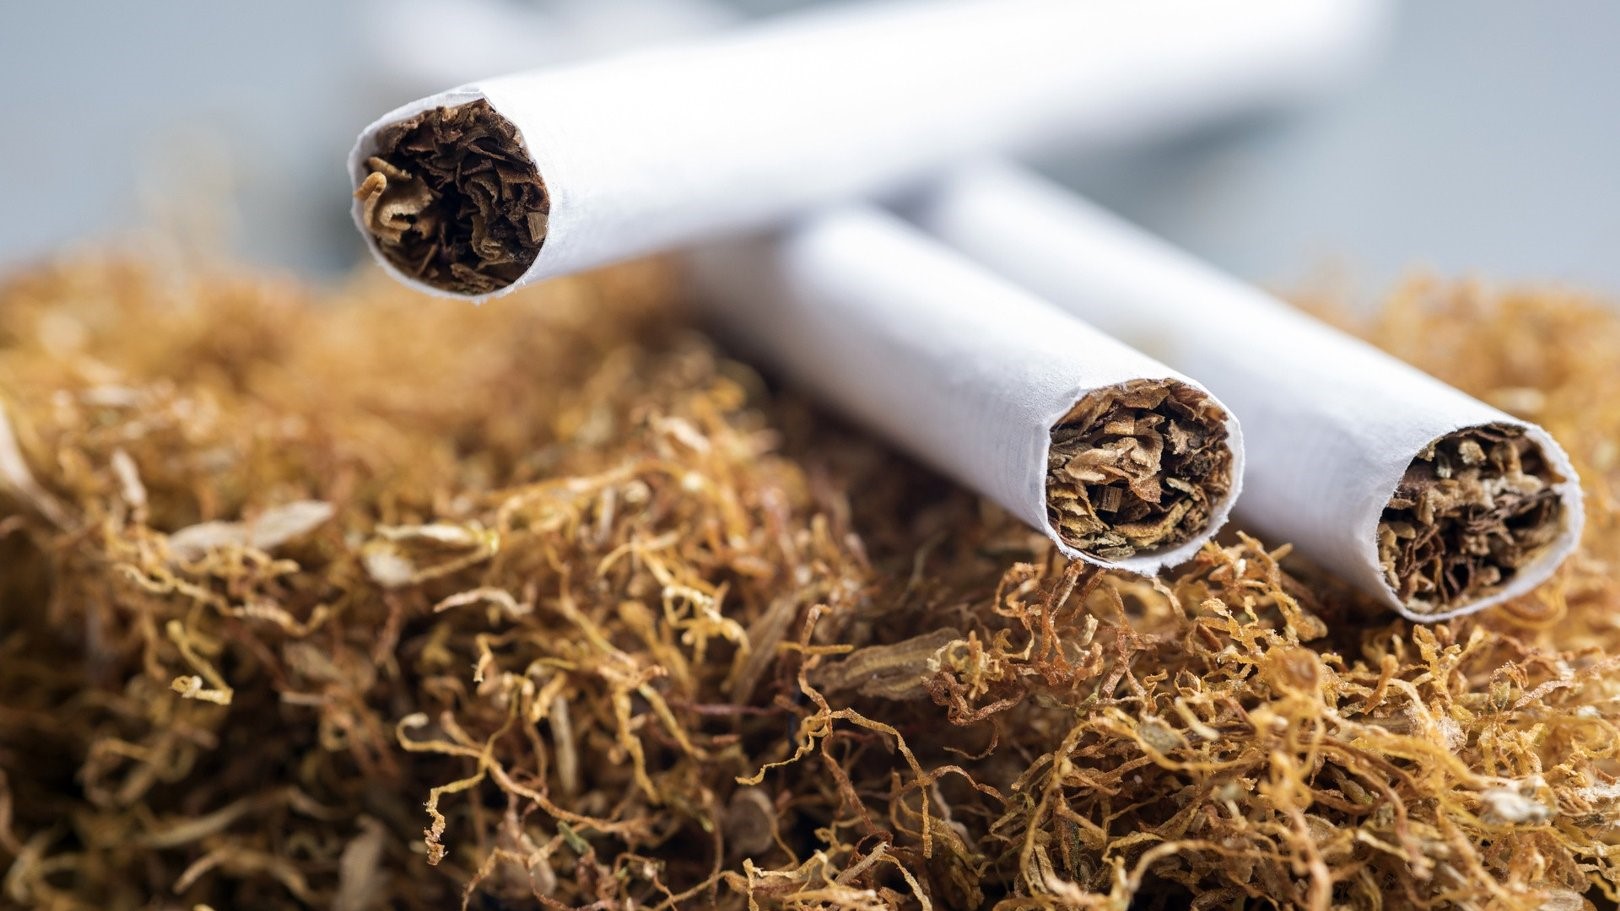 اتحاد الفلاحين:  التعديل الأخير لأسعار التبغ غير منصف ويجب تحديد سعر الكيلو الواحد بـ 15 ألف ليرة كحد أدنى